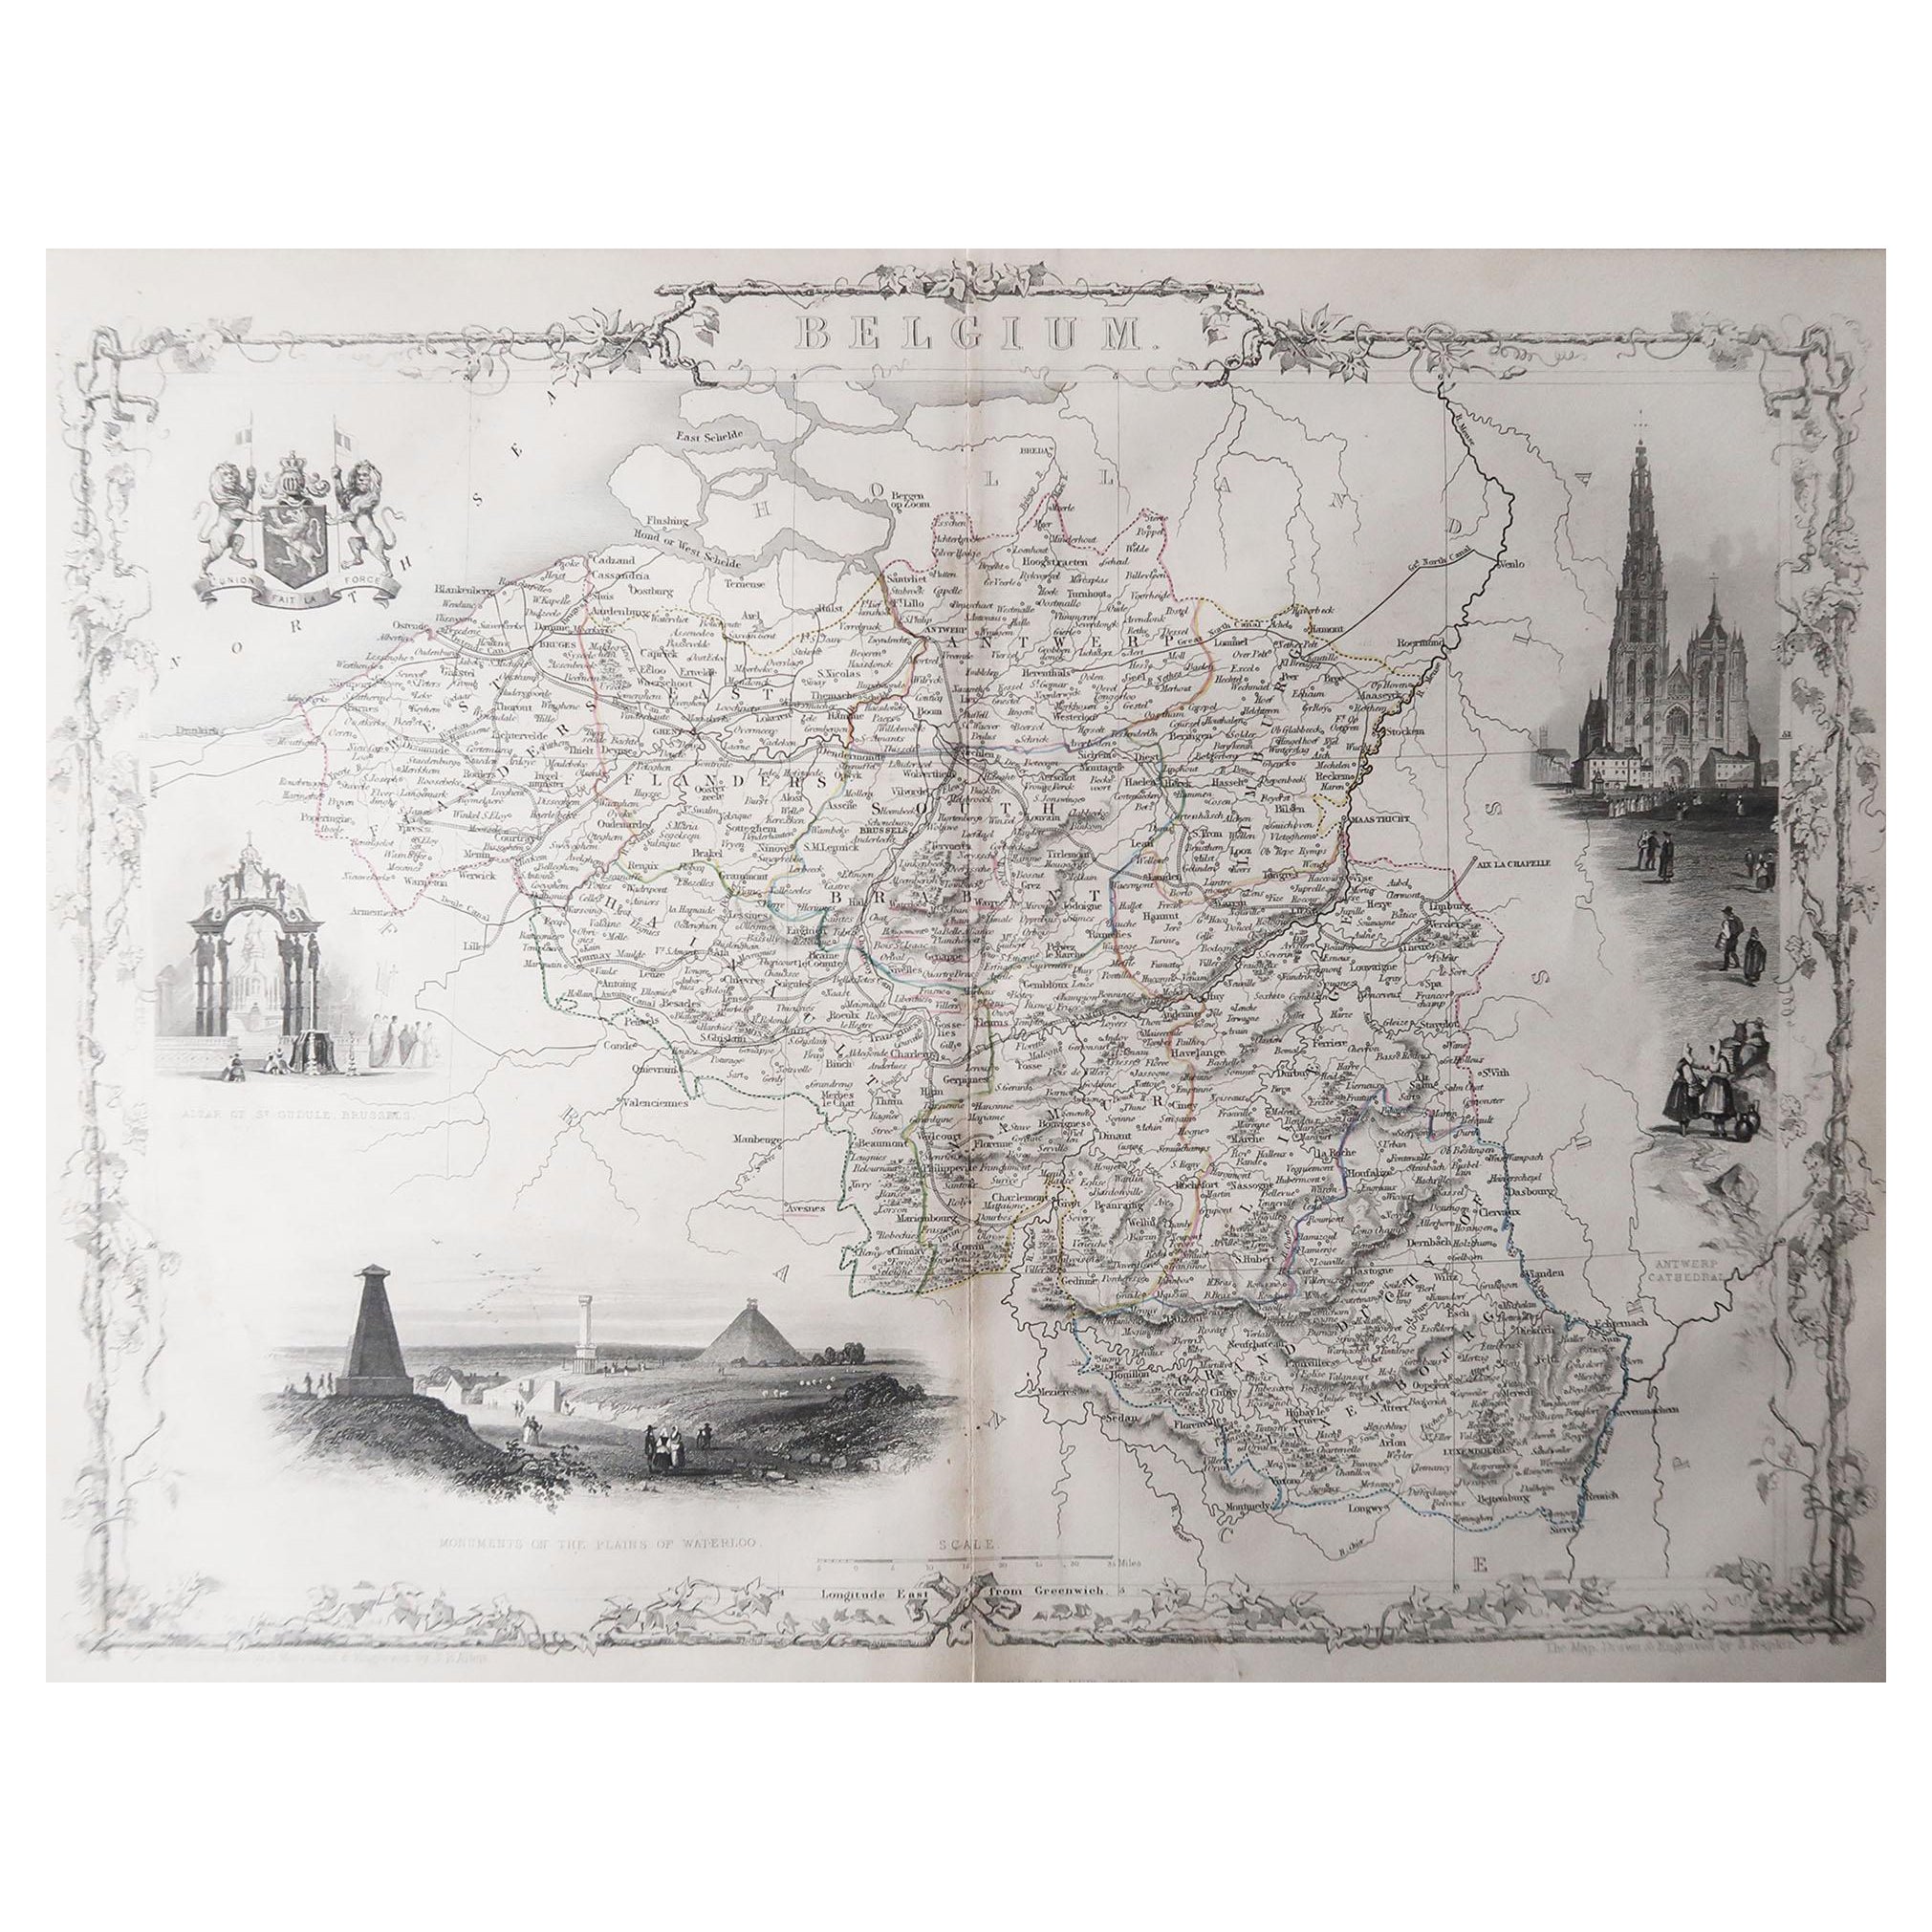 Carte ancienne originale de Belgique par Tallis, datant d'environ 1850